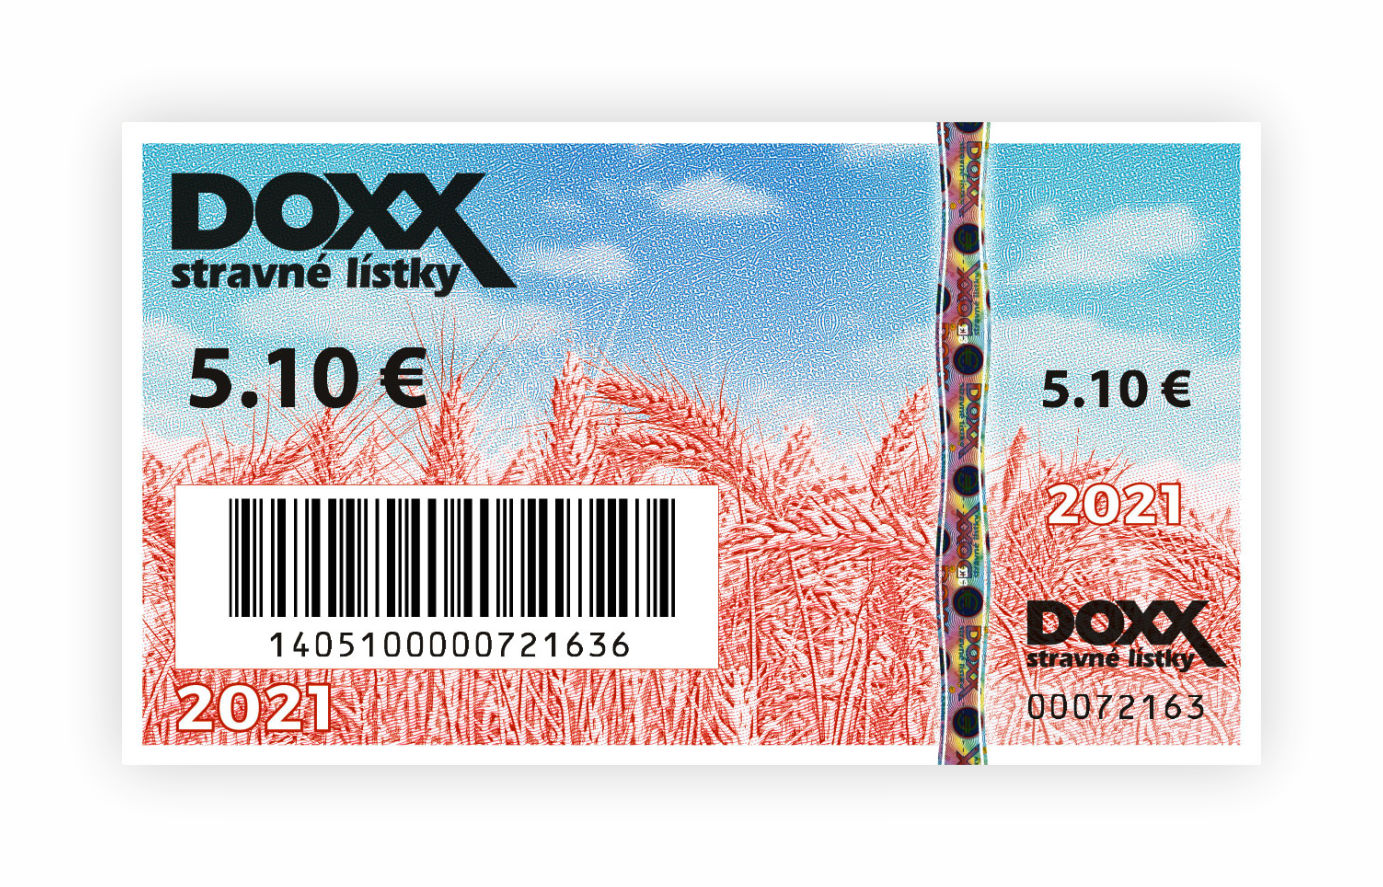 Stravne listky emisia 2021 DOXX - Stravné lístky